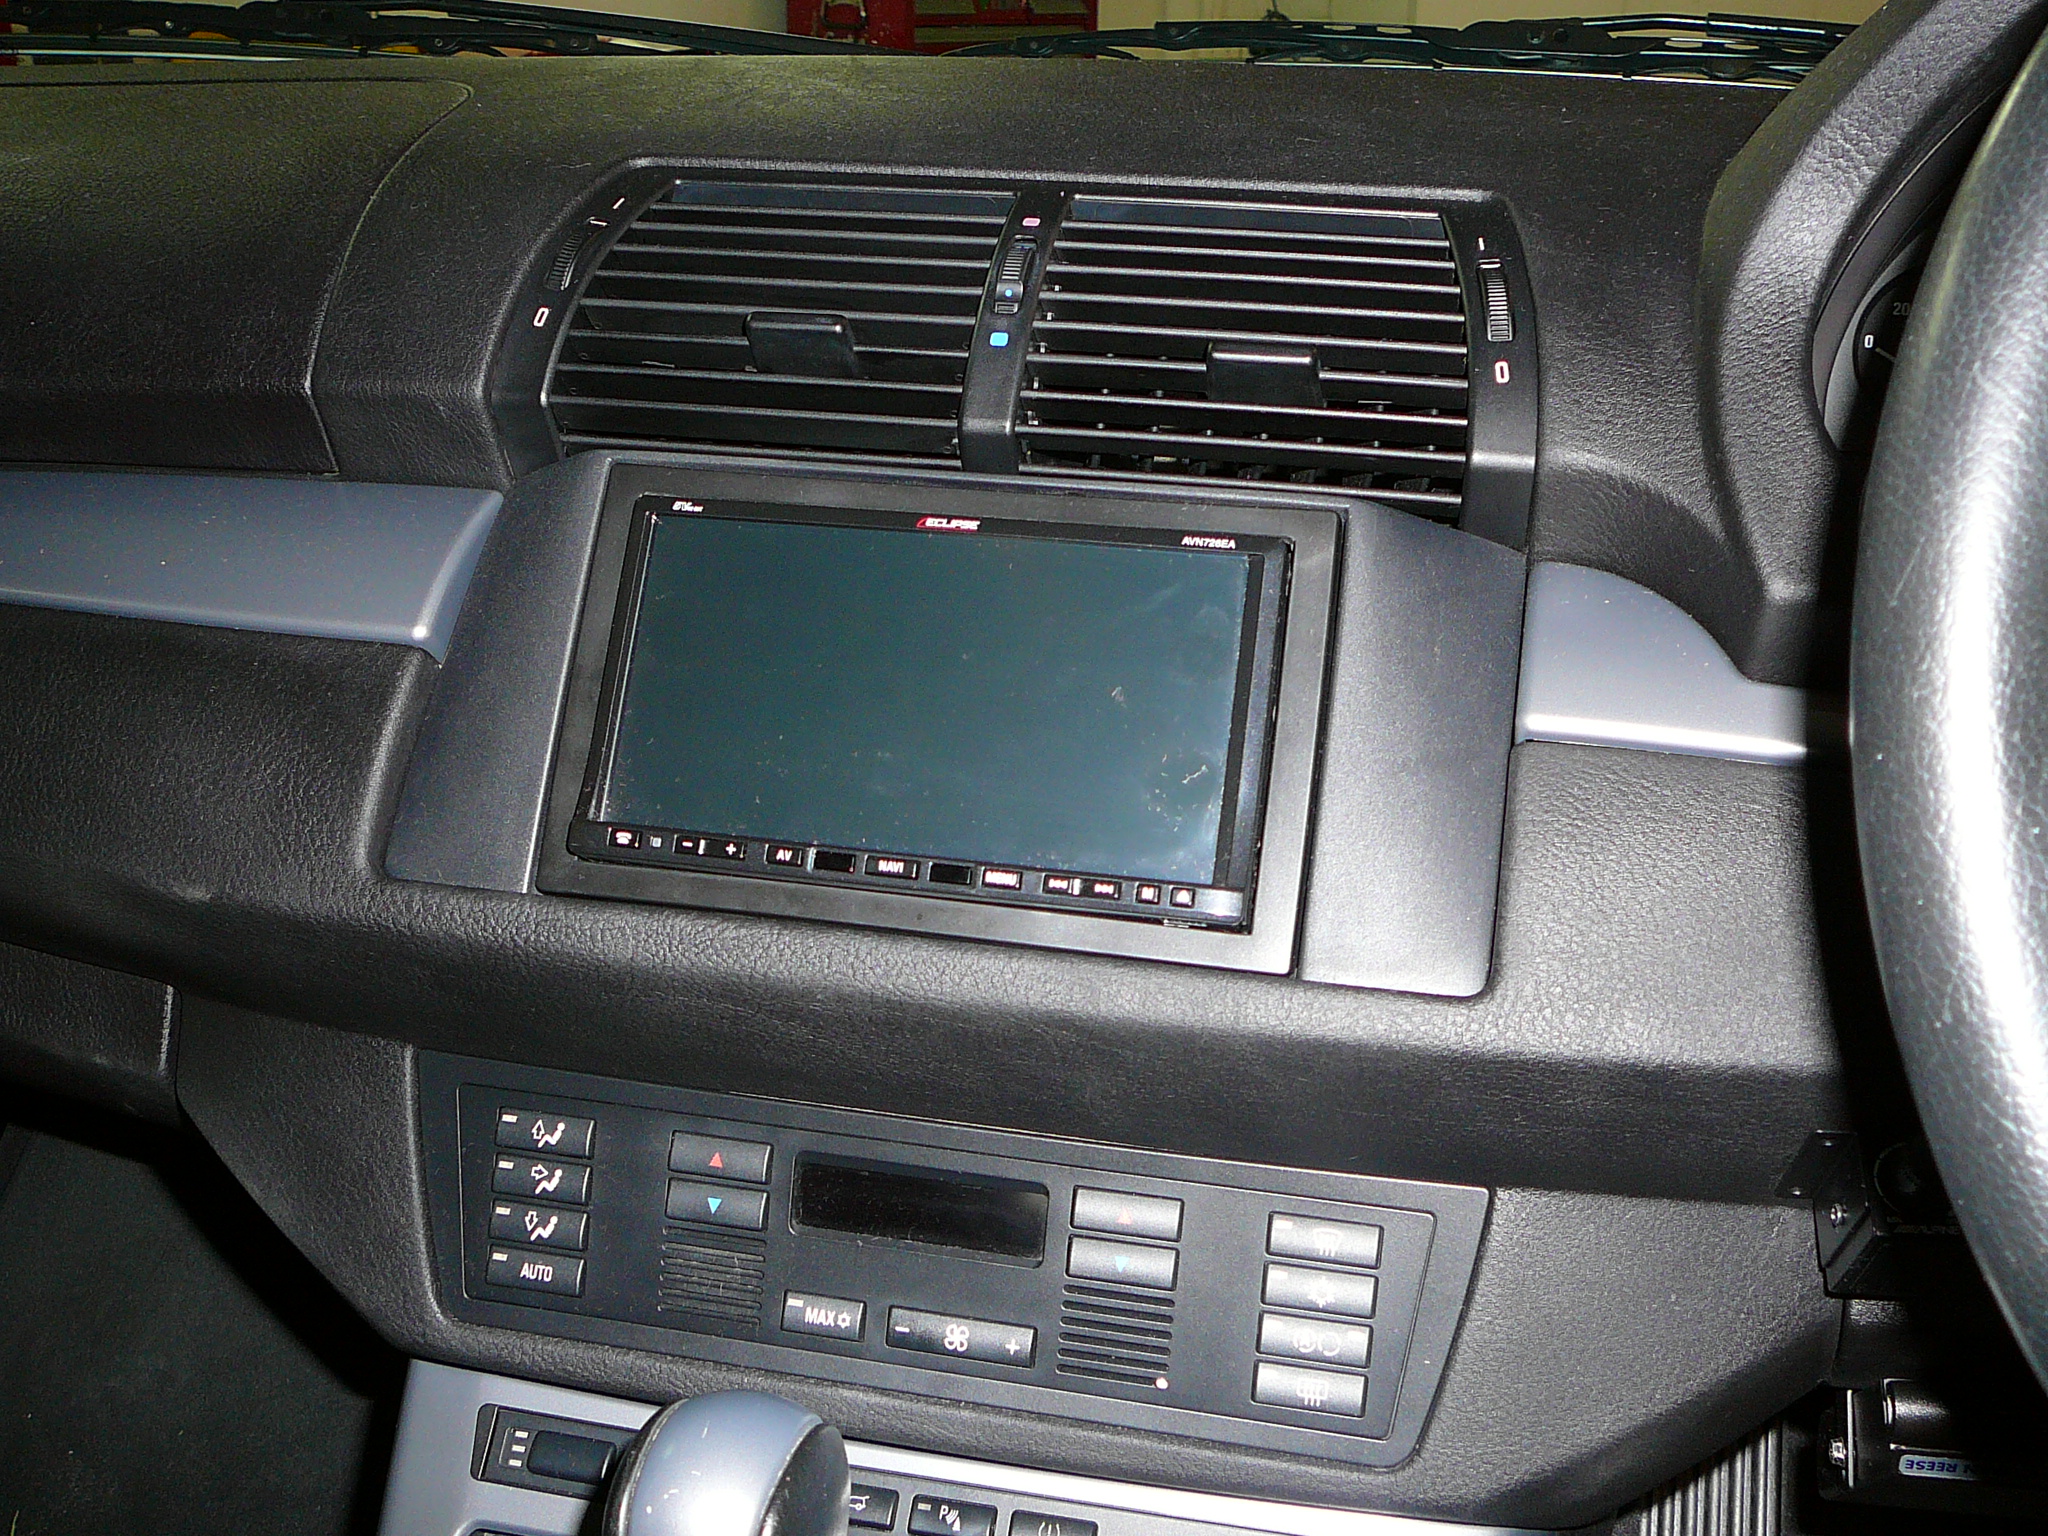 BMW X5 2004 In Dash Navigation custom dash trim